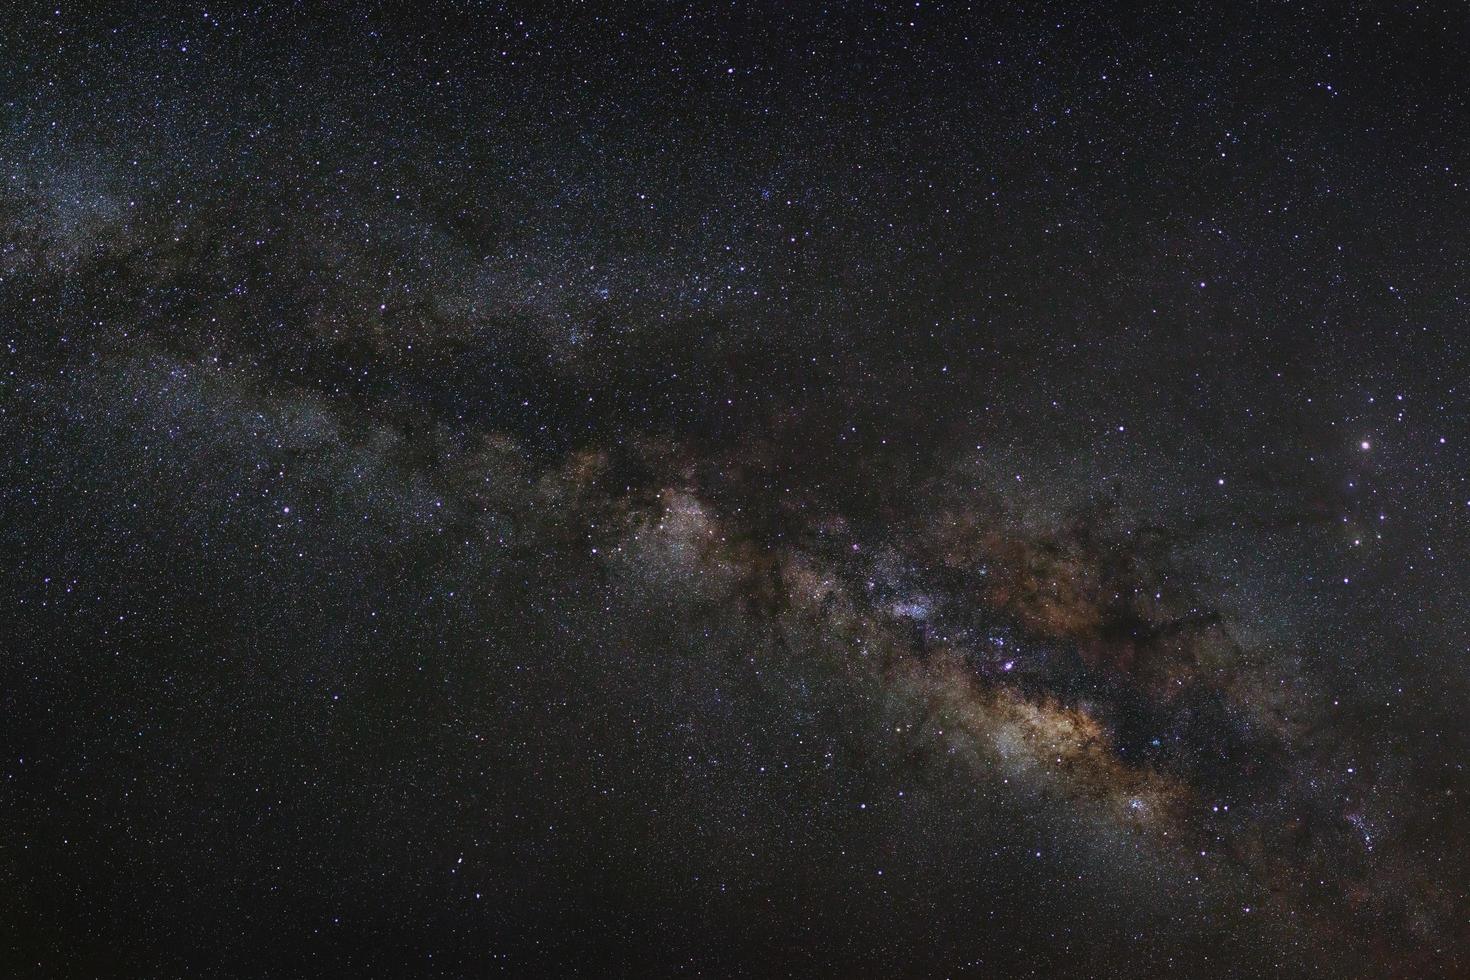 Via Láctea em um céu noturno, fotografia de longa exposição, com grãos. foto